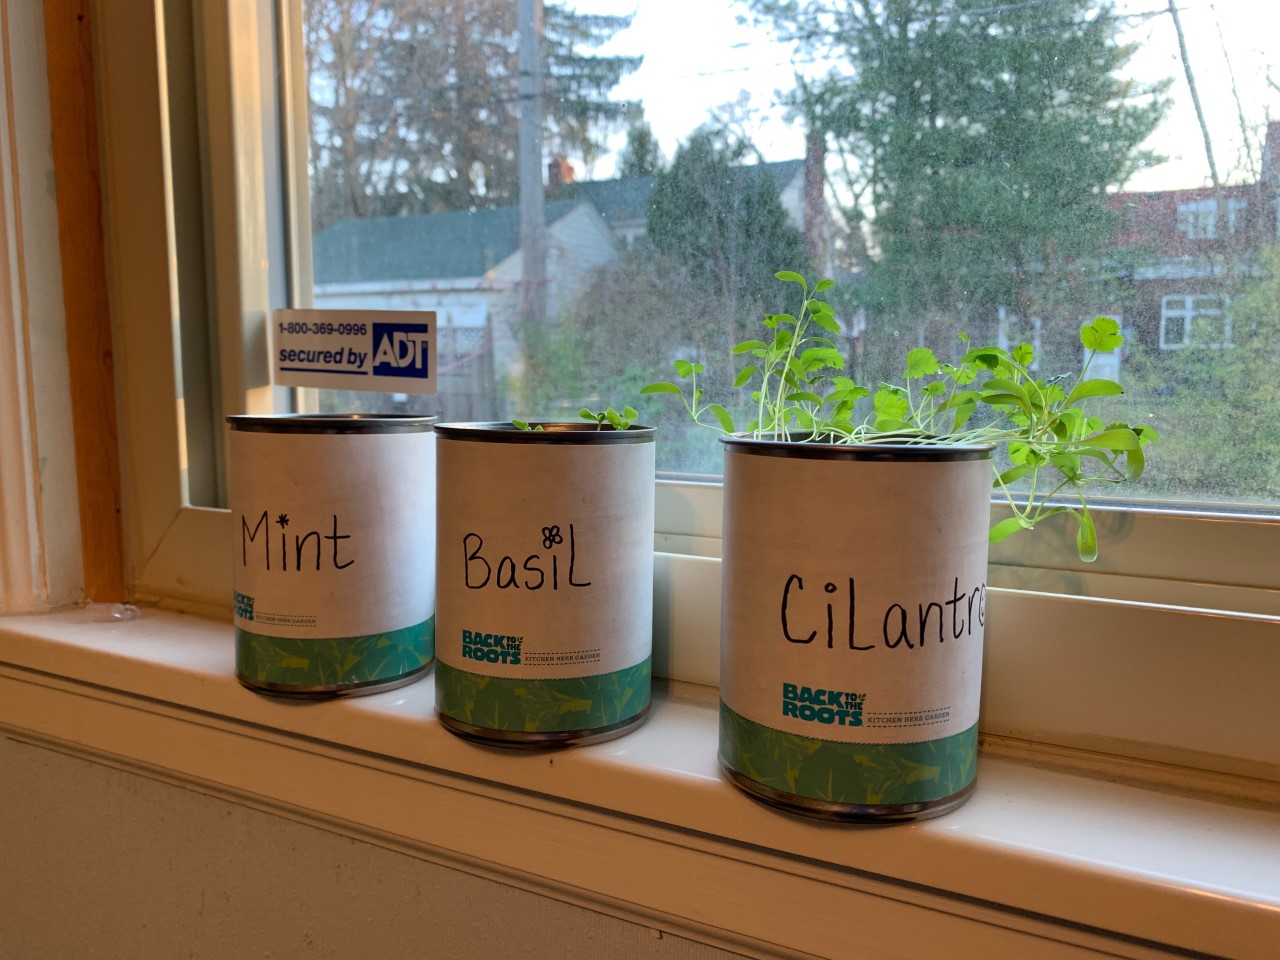 Growing herbs in indoor containers